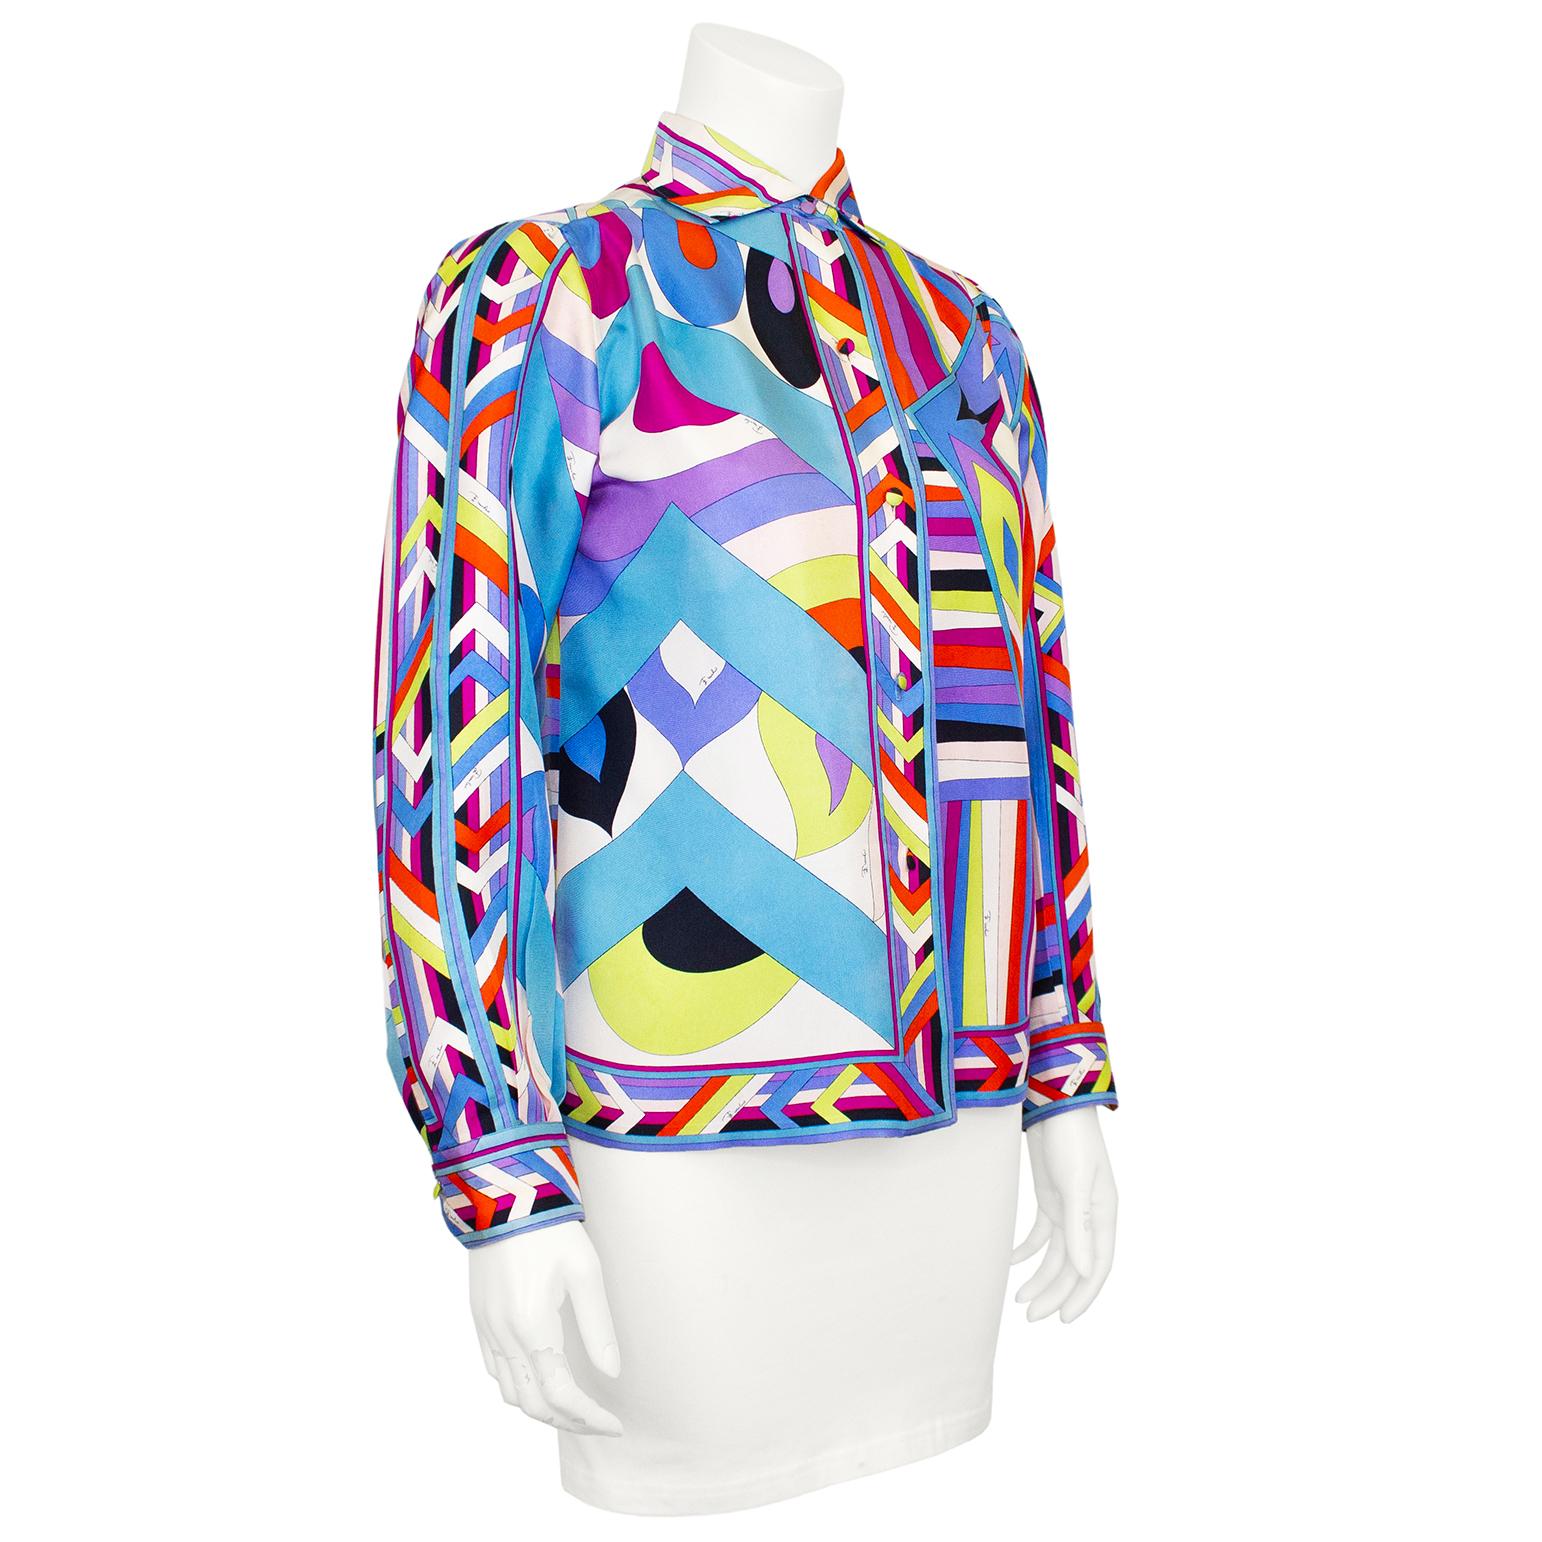 Dieses Hemd von Emilio Pucci aus den 1960er Jahren ist aus wunderschöner, geometrisch bedruckter Regenbogenseide gefertigt. Spreizkragen mit läuferförmigen Ärmeln und leicht locker am Körper zu tragen. Stoffbezogene Knöpfe in der Knopfleiste und an